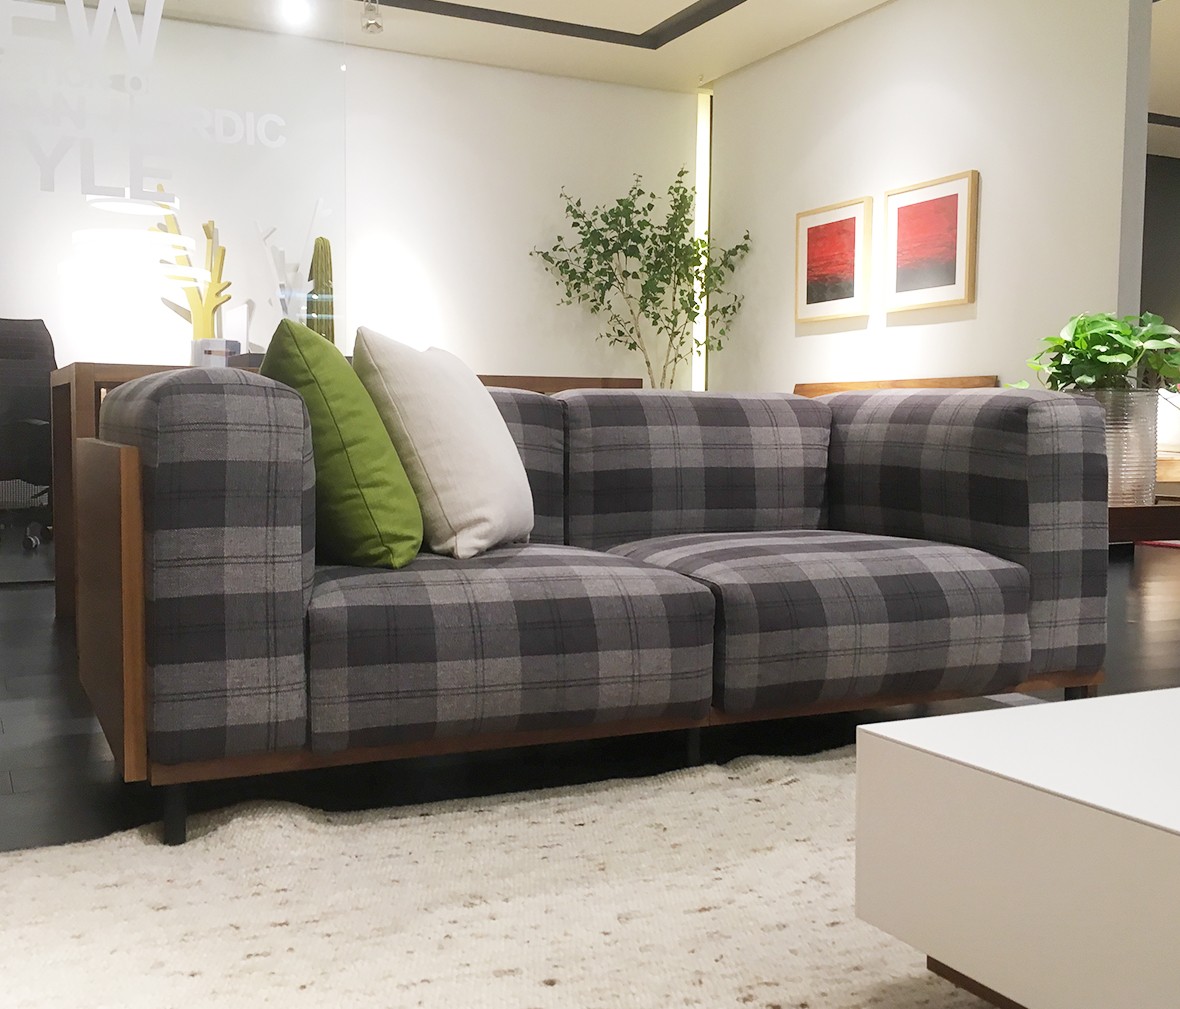 尚景家具 sf9723型号沙发 板木结合材质沙发 北欧简约风格